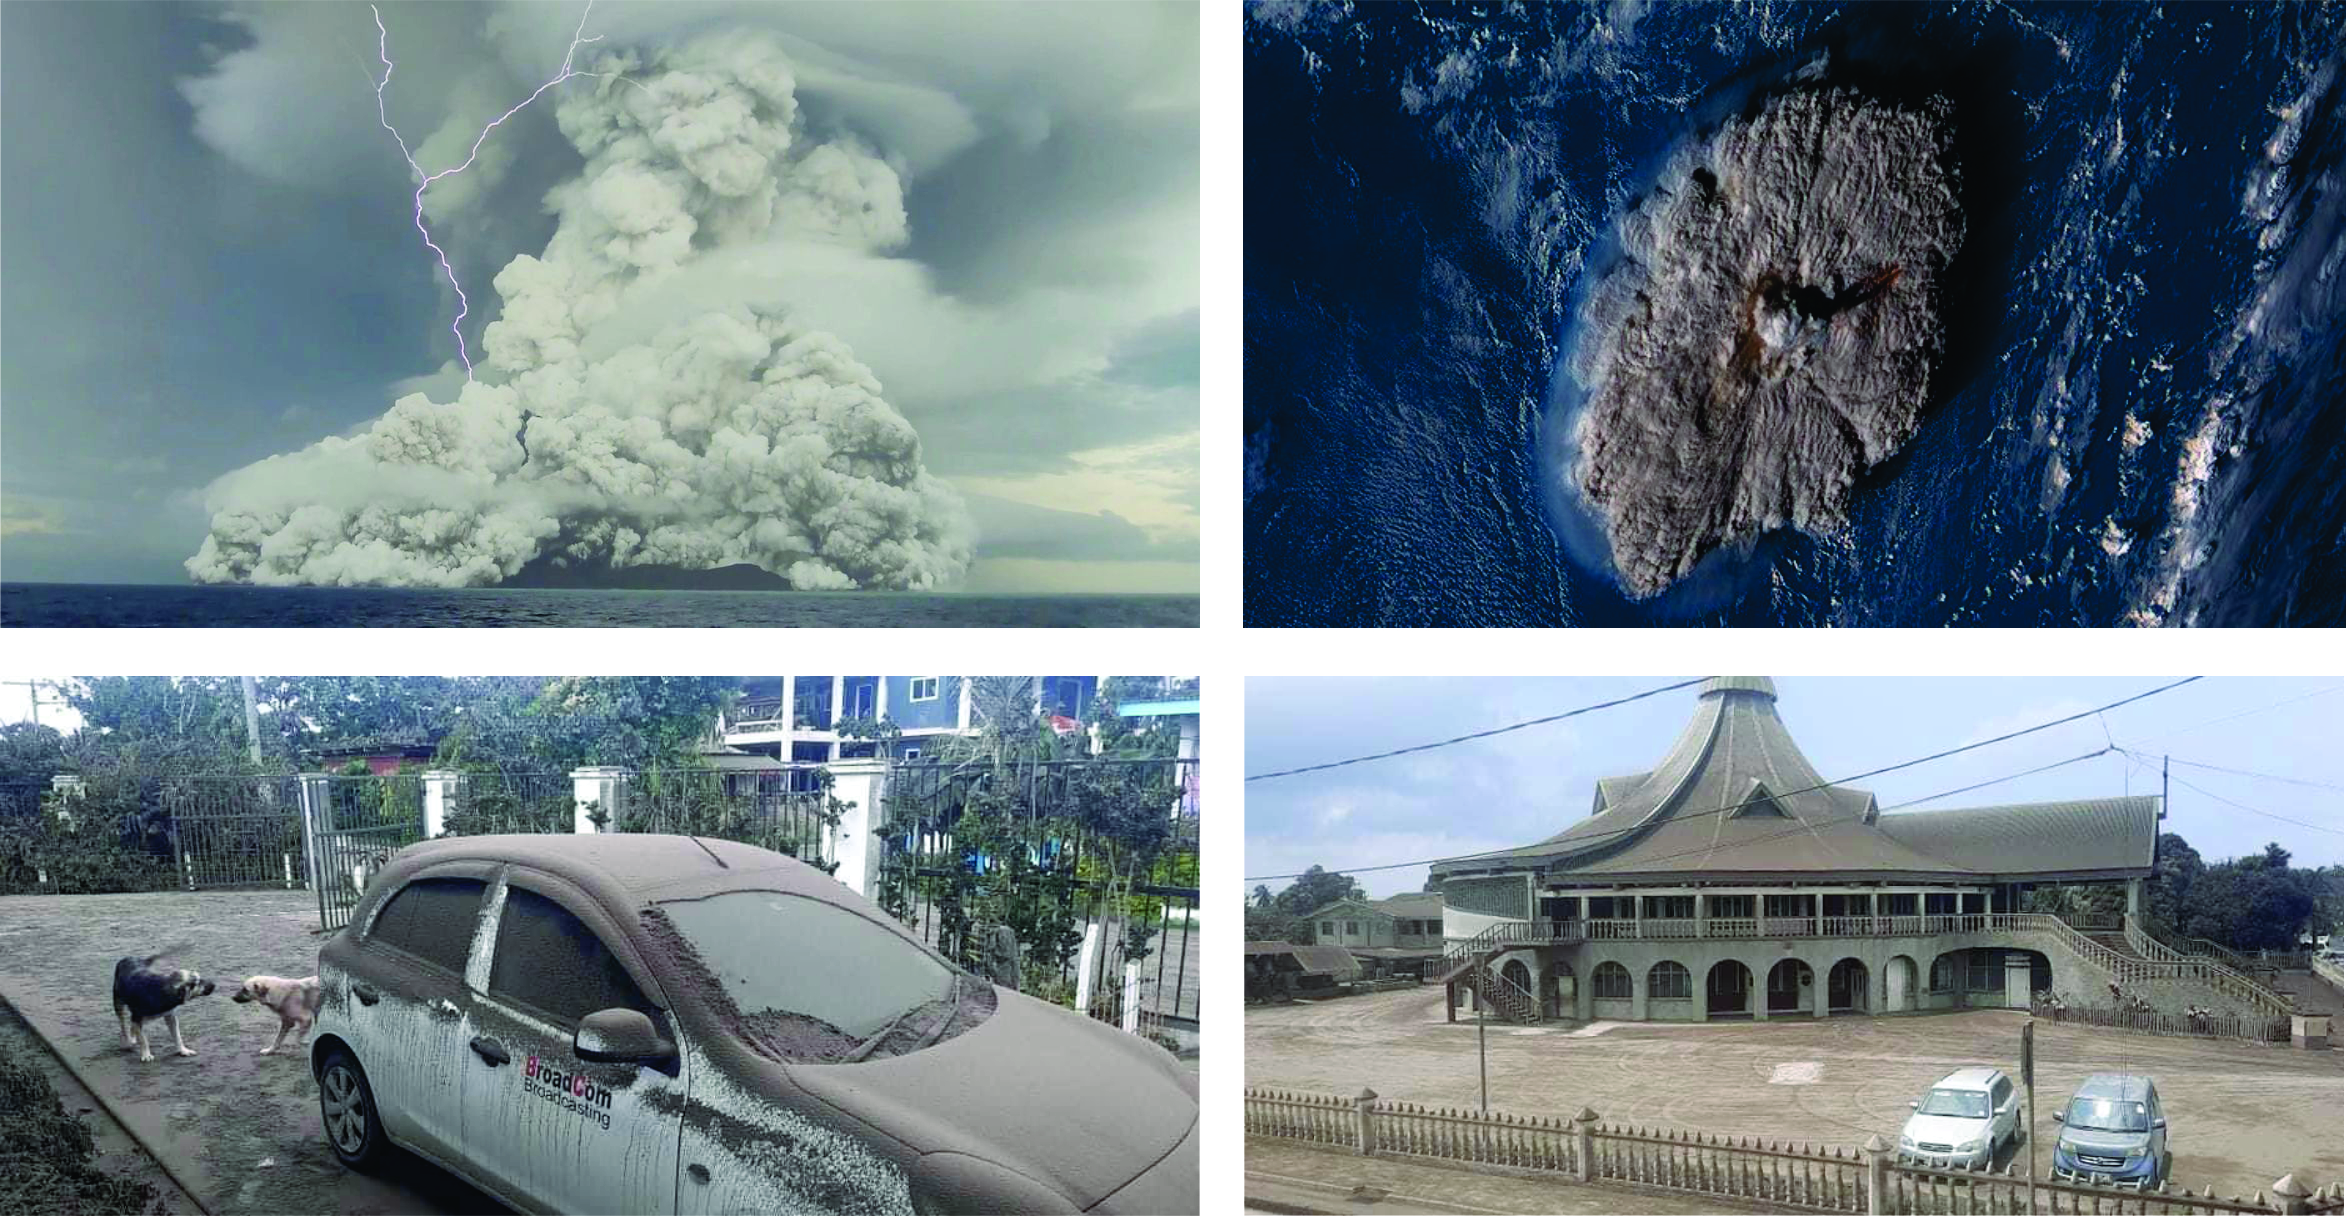 Imagens da coluna eruptiva produzida pela atividade explosiva do vulcão Hunga Tonga-Hunga Ha’apai em 14-15 de janeiro de 2022 (acima) e da consequente camada de cinzas recobrindo a capital Nuku’alofa (abaixo)